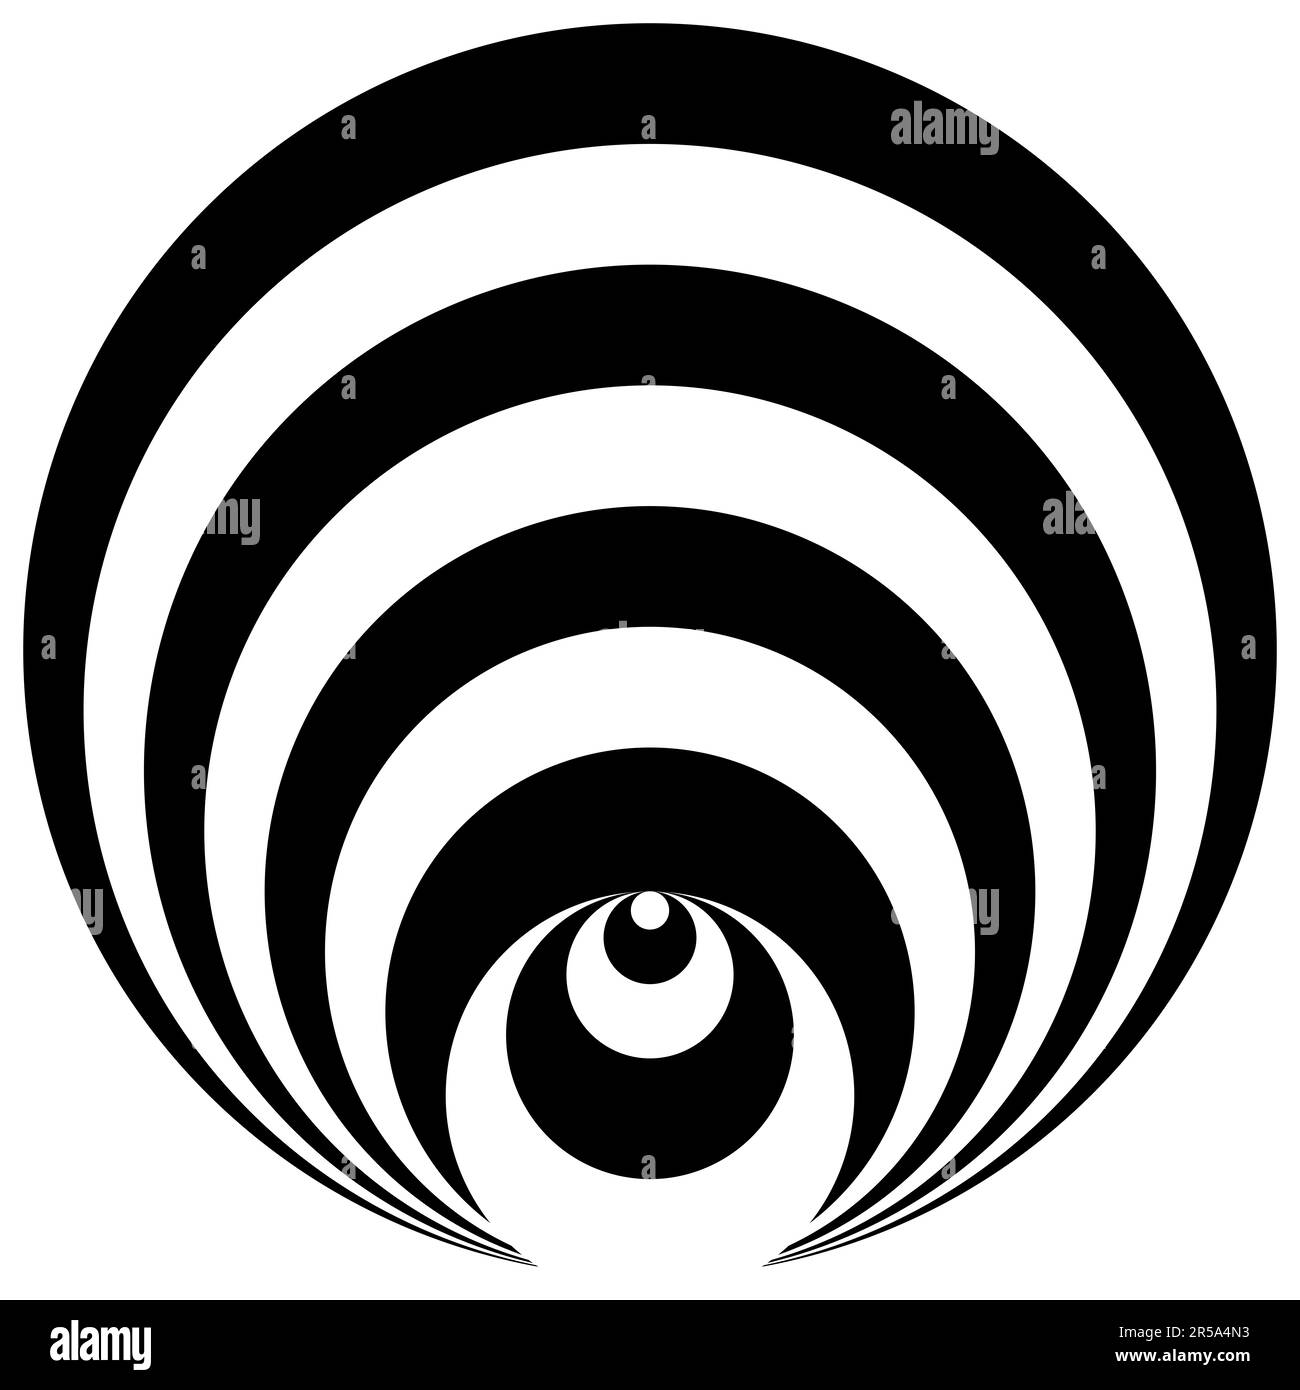 Modello astratto. Cerchi concentrici sovrapposti in bianco e nero. Percezione ingannevole della prospettiva. Foto Stock